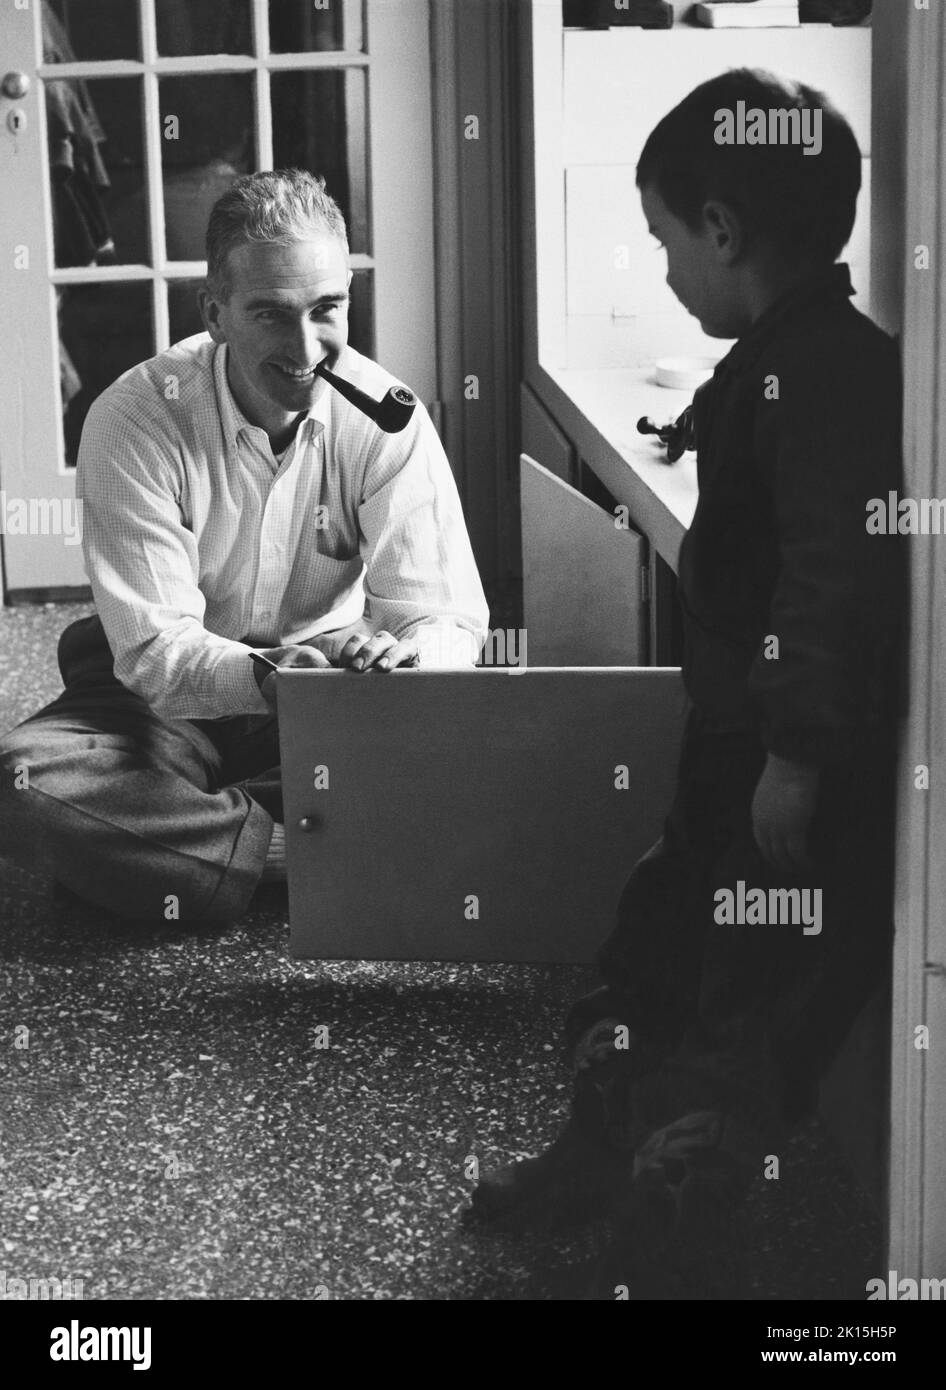 Un père fumeur de pipe ouvre une porte d'armoire pendant que son fils regarde dessus.Vers les années 1960. Banque D'Images